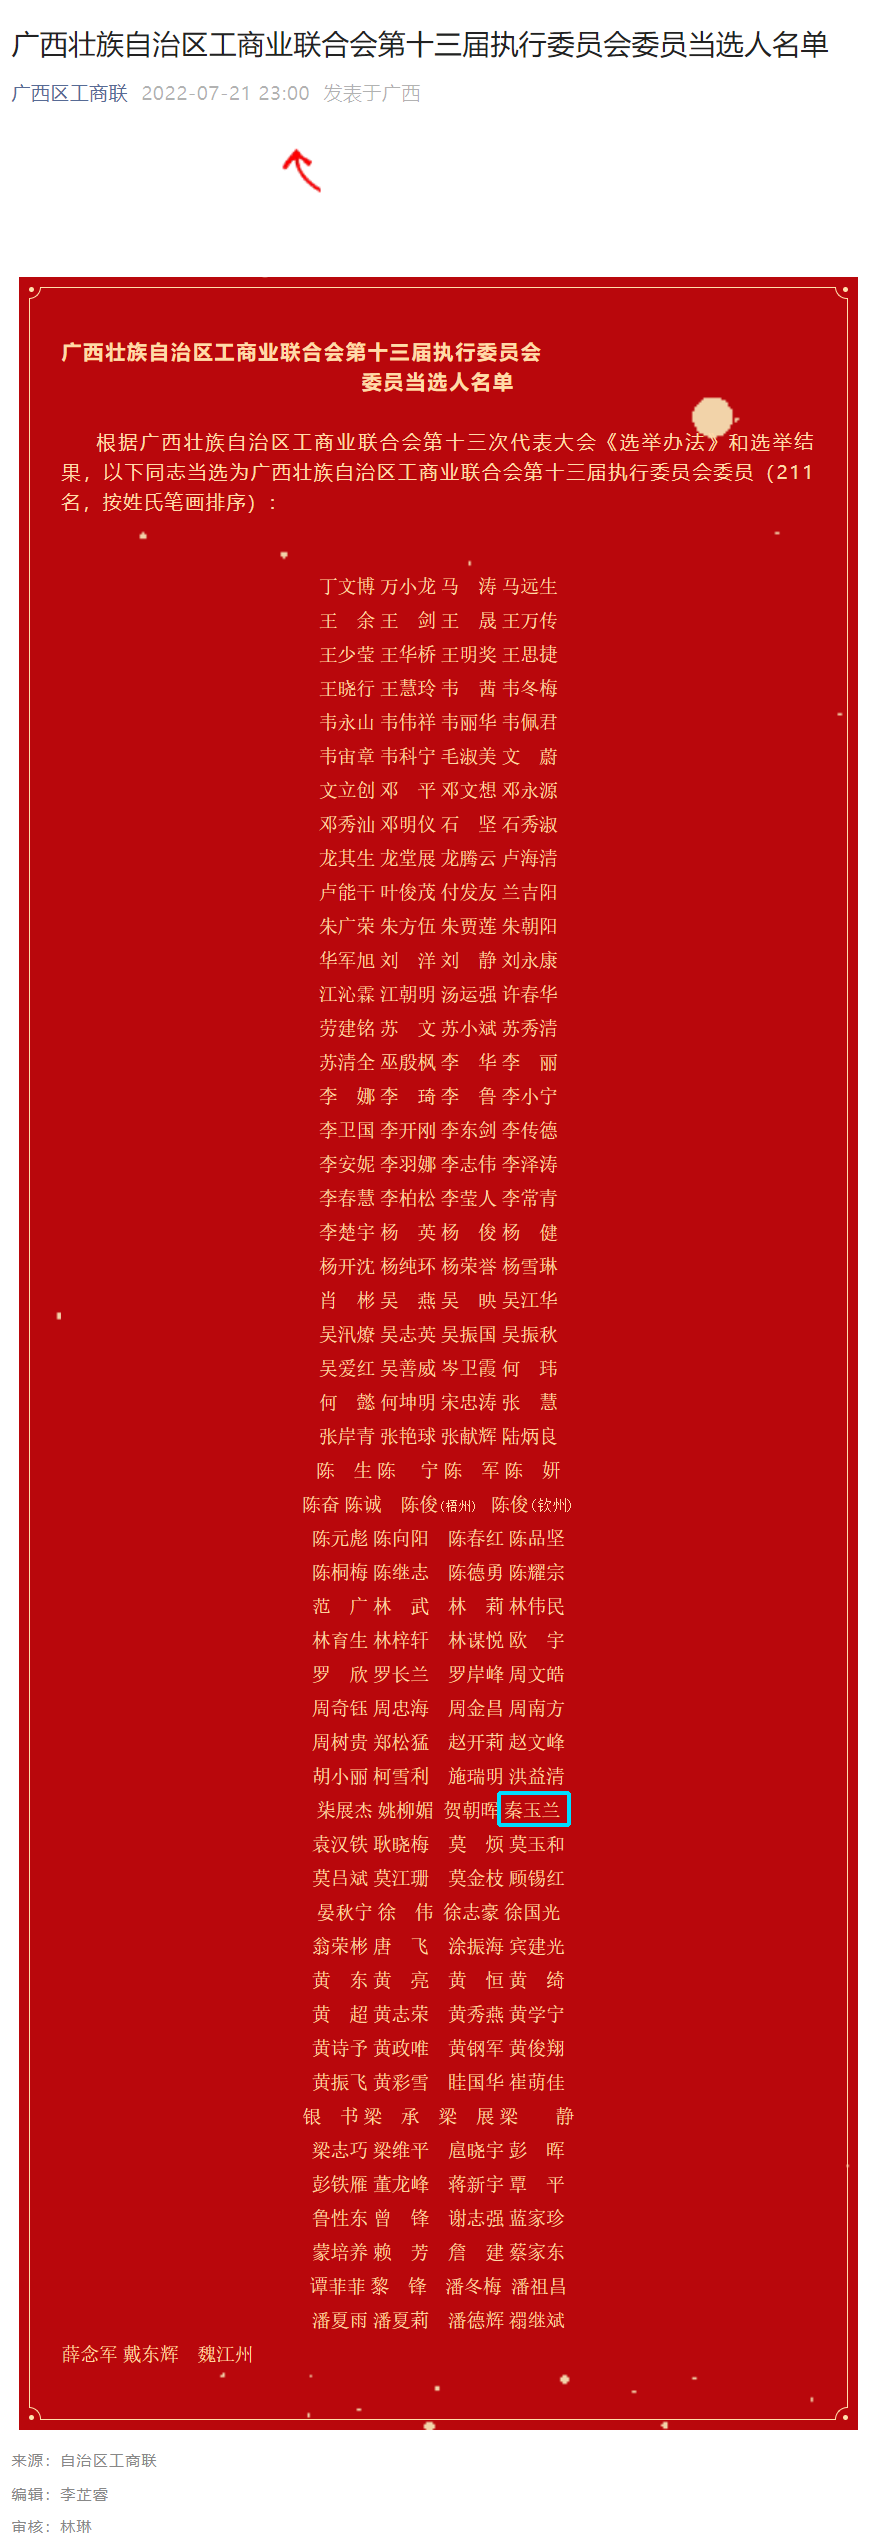 2022.729广西区工商联-广西壮族自治区工商业联合会第十三届执行委员会委员当选人名单.png